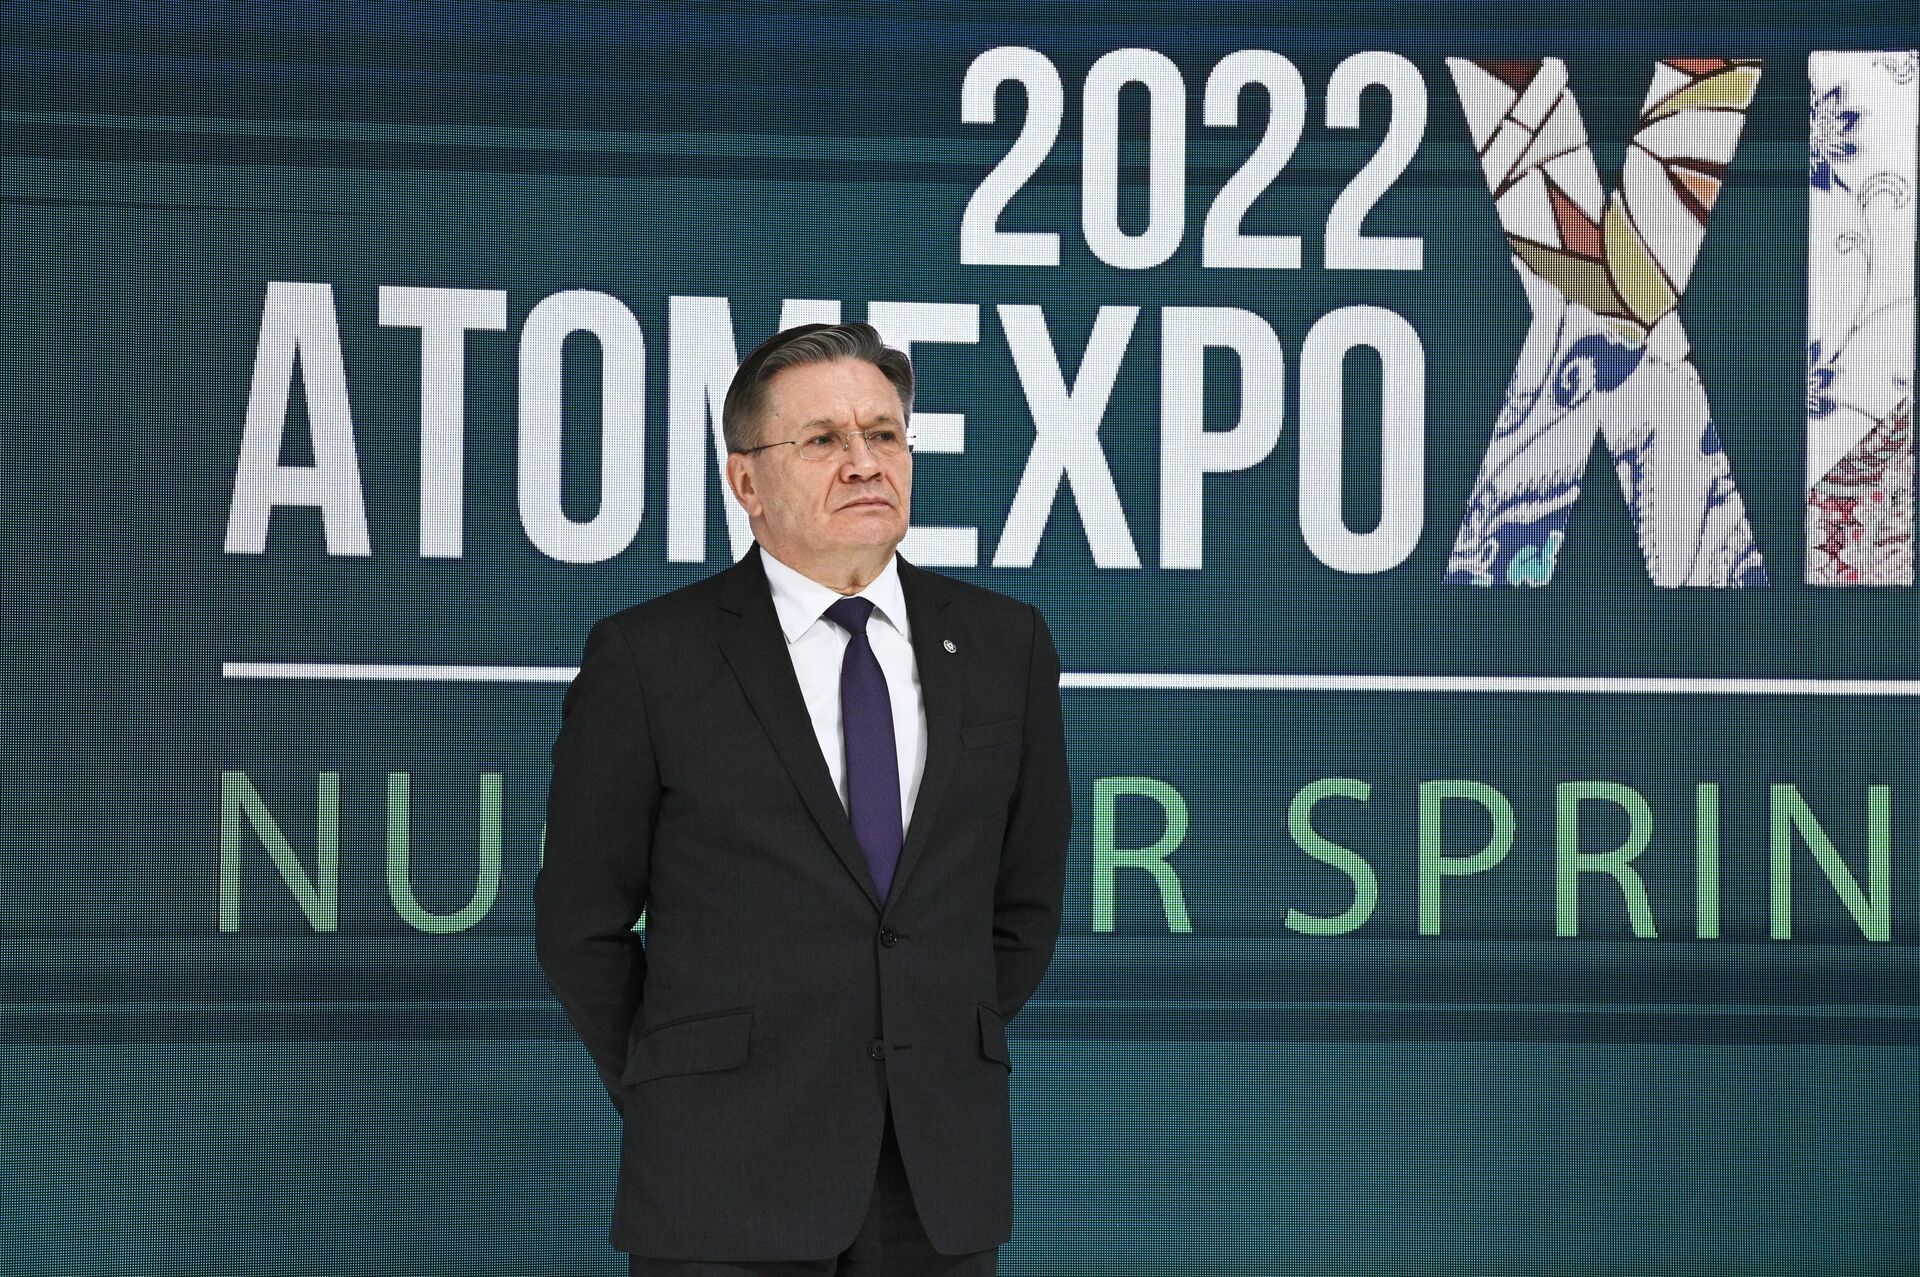 Diretor-geral da Rosatom, Aleksei Likhachev, durante a cerimônia de abertura do Fórum Internacional AtomExpo, Sochi, Rússia, 21 de novembro de 2022 - Sputnik Brasil, 1920, 21.11.2022